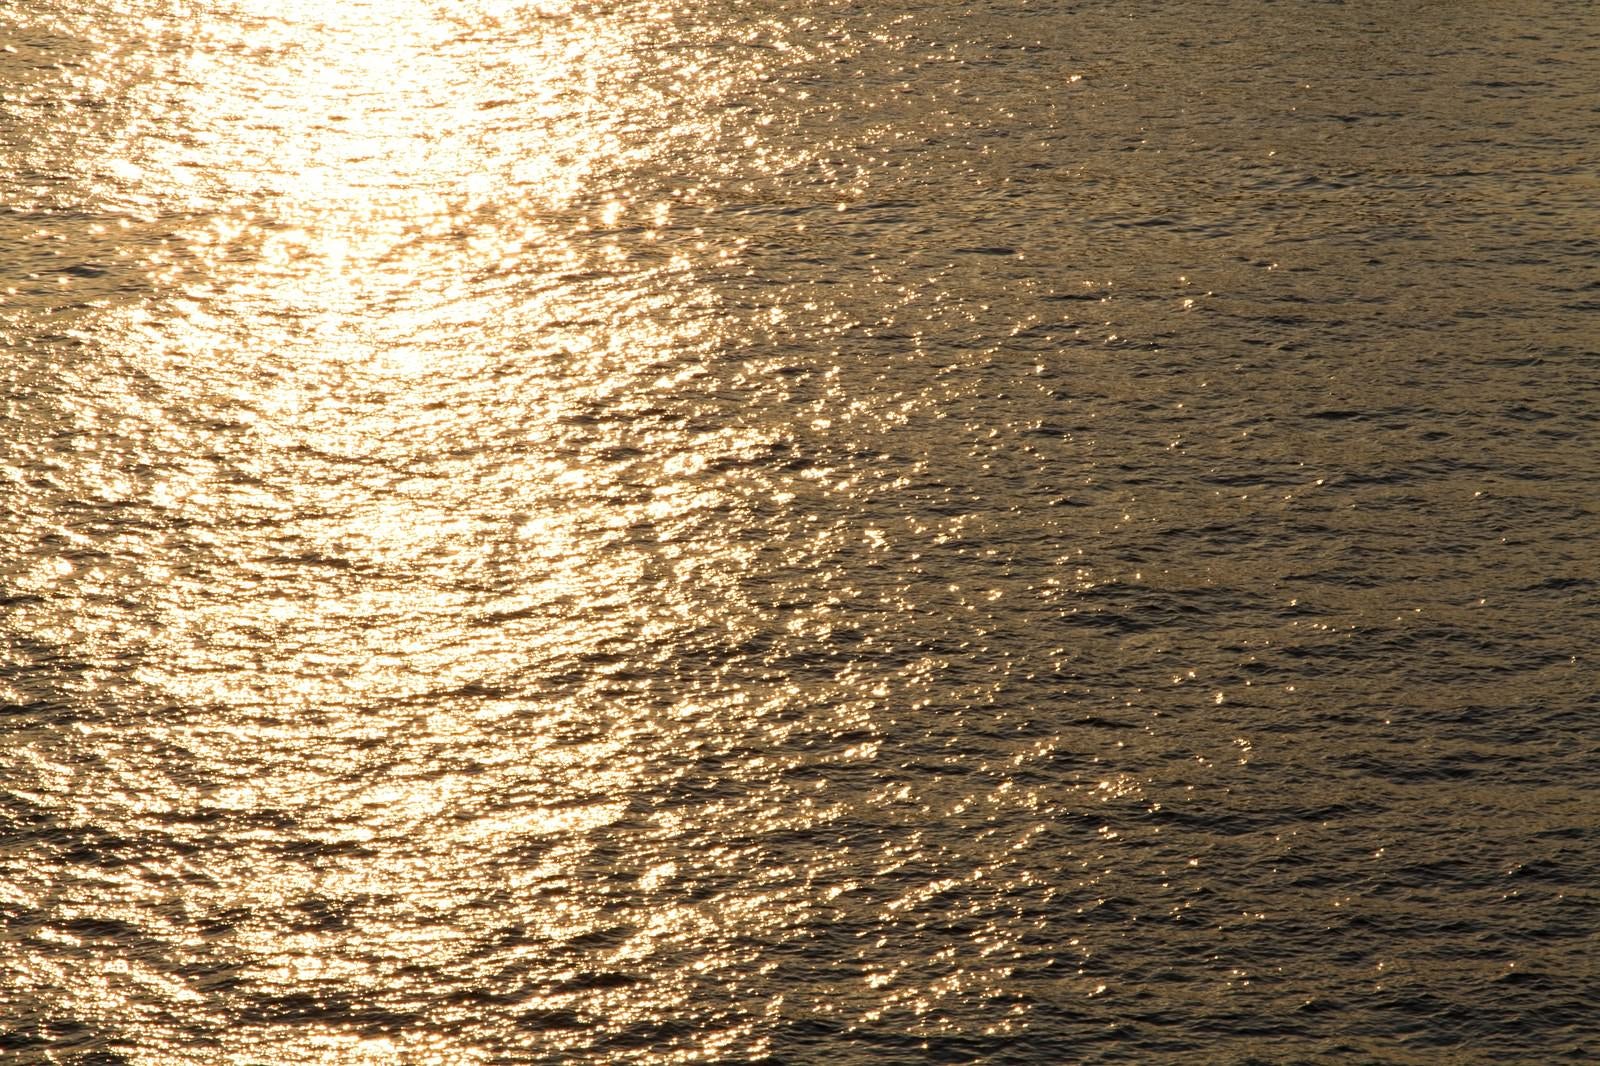 「夕焼け反射する水面」の写真